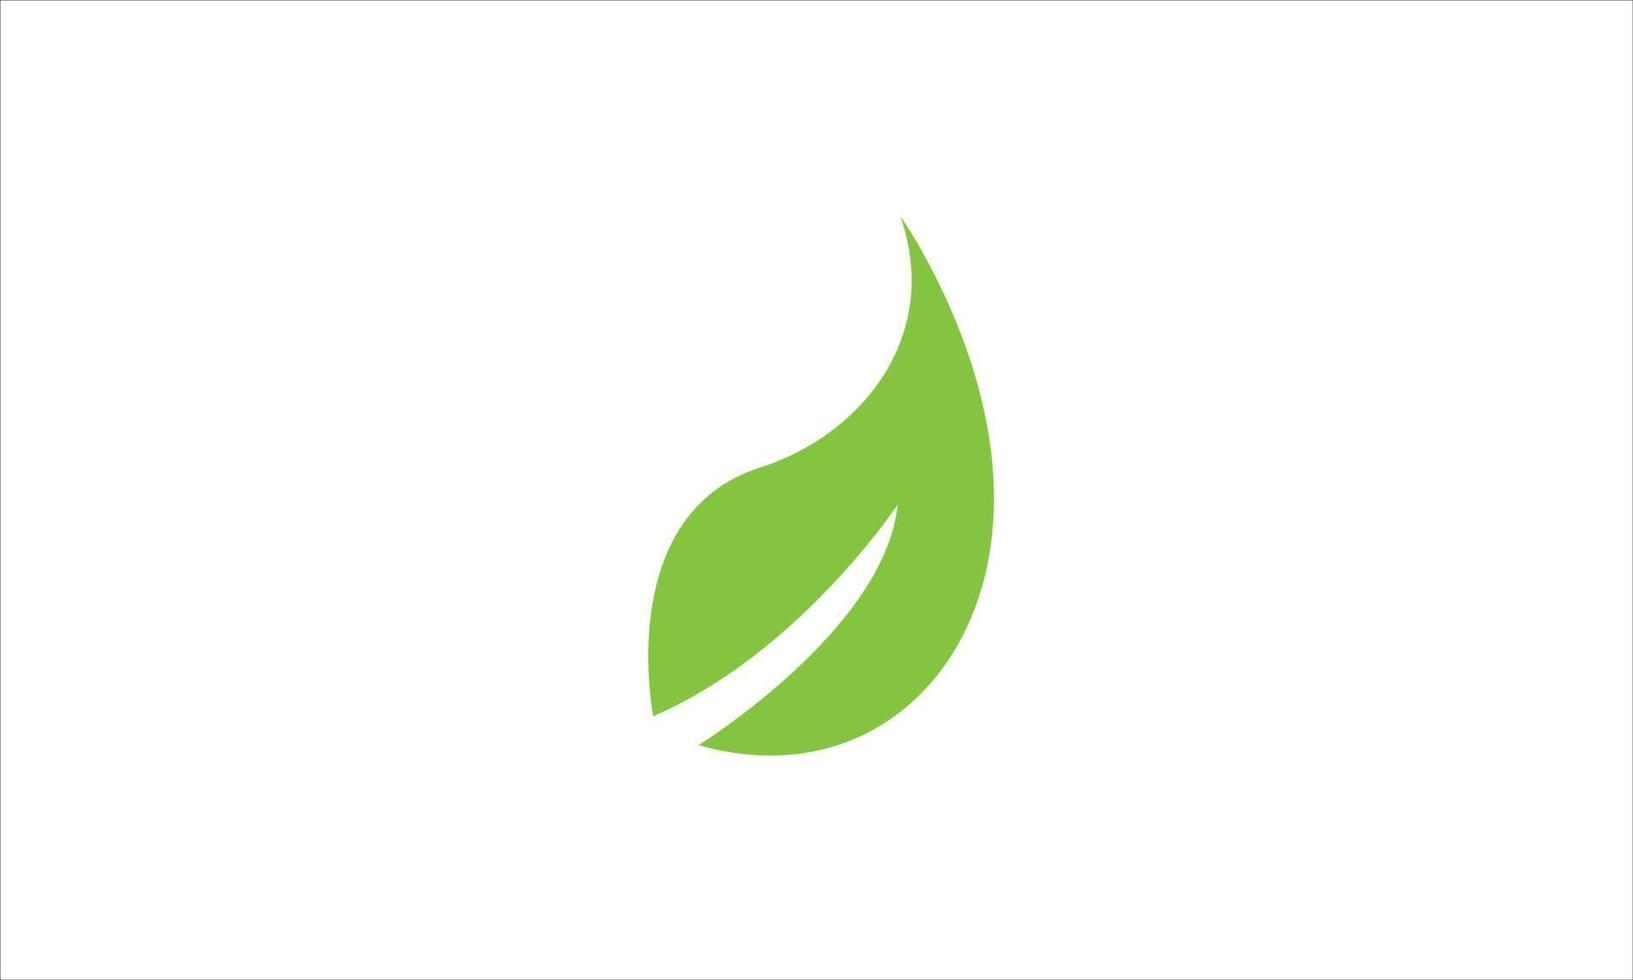 Leaf logo. Green leaf logo icon free vector illustration